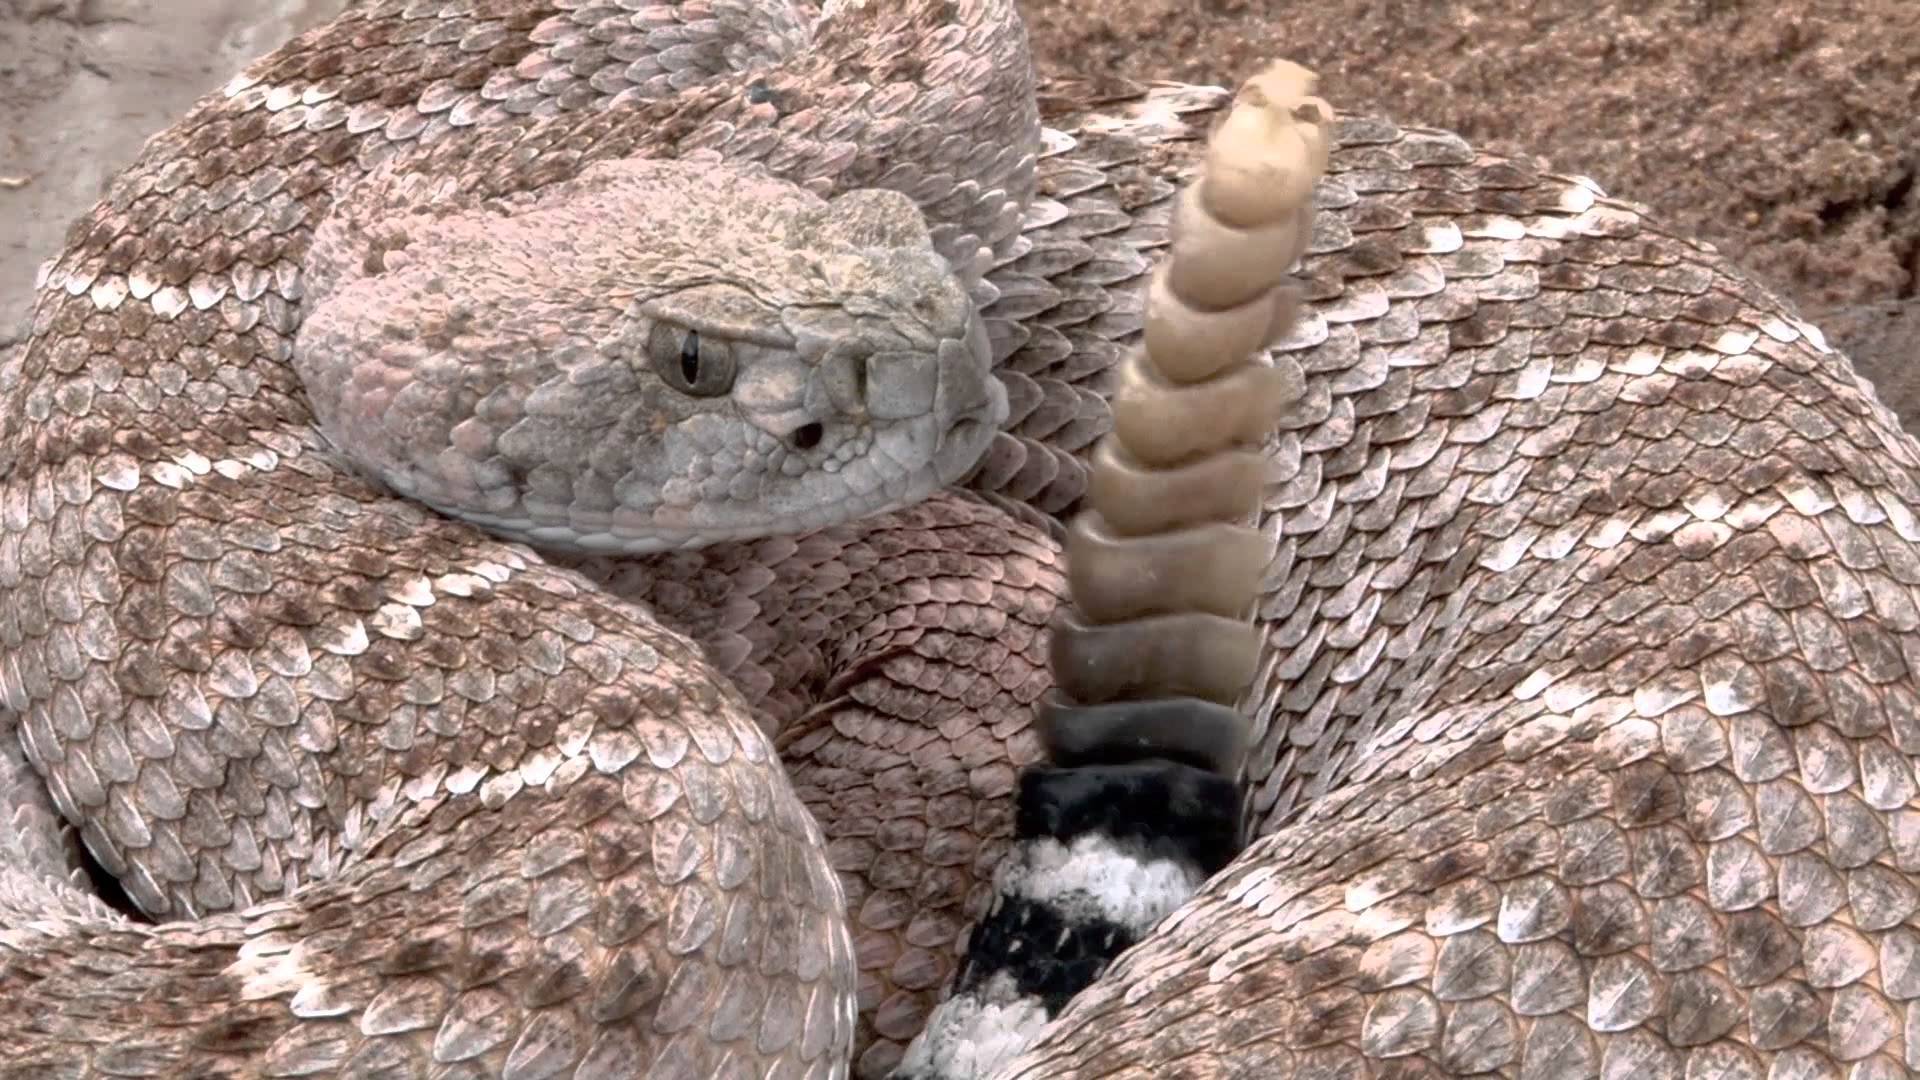 Гремучая змея - фото, описание, ареал, питание, враги